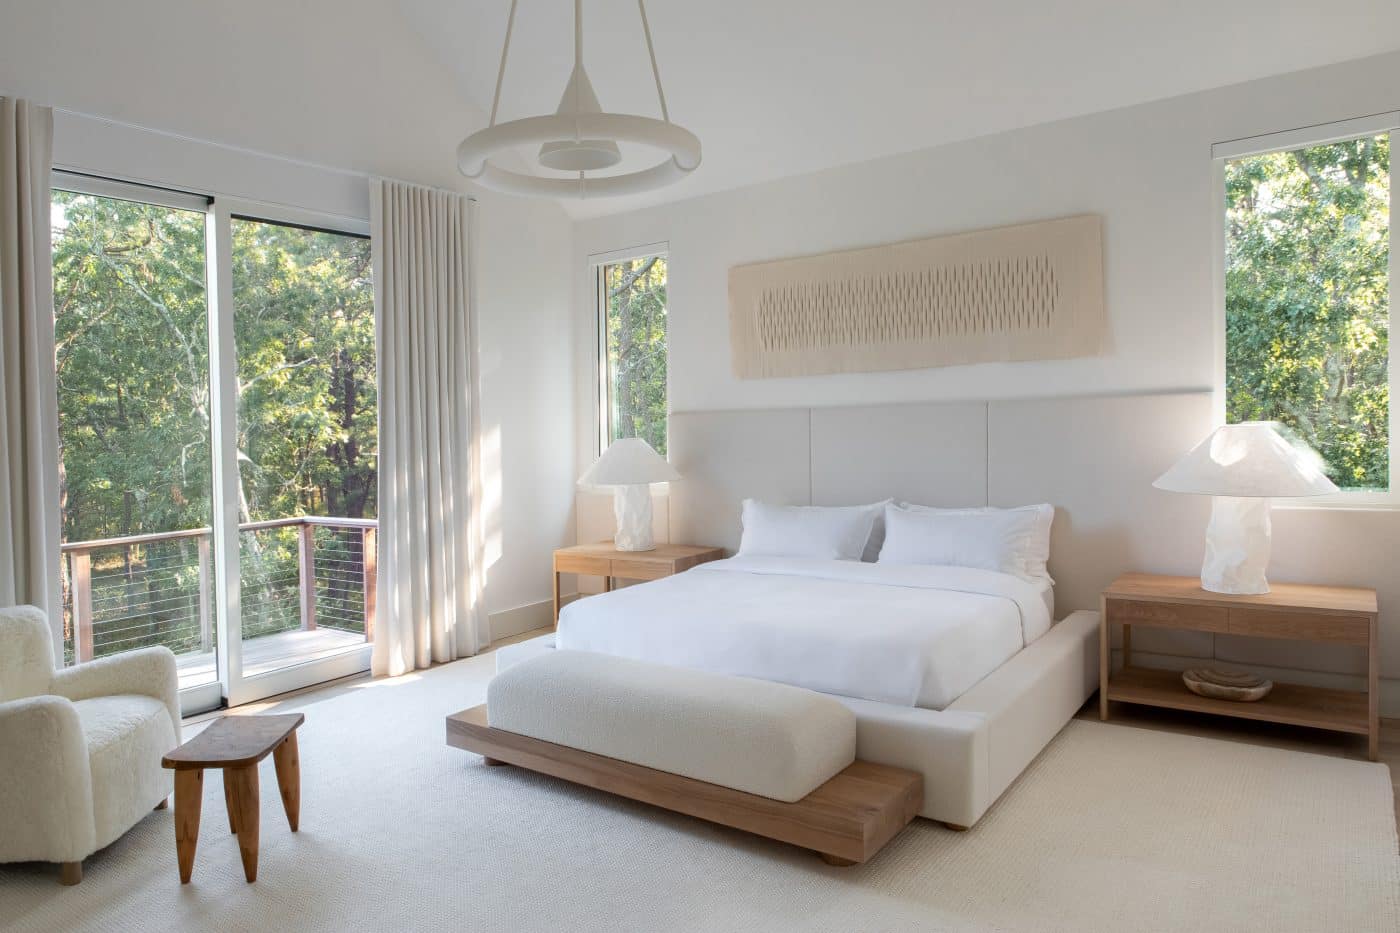 Hamptons bedroom by Chango & Co.